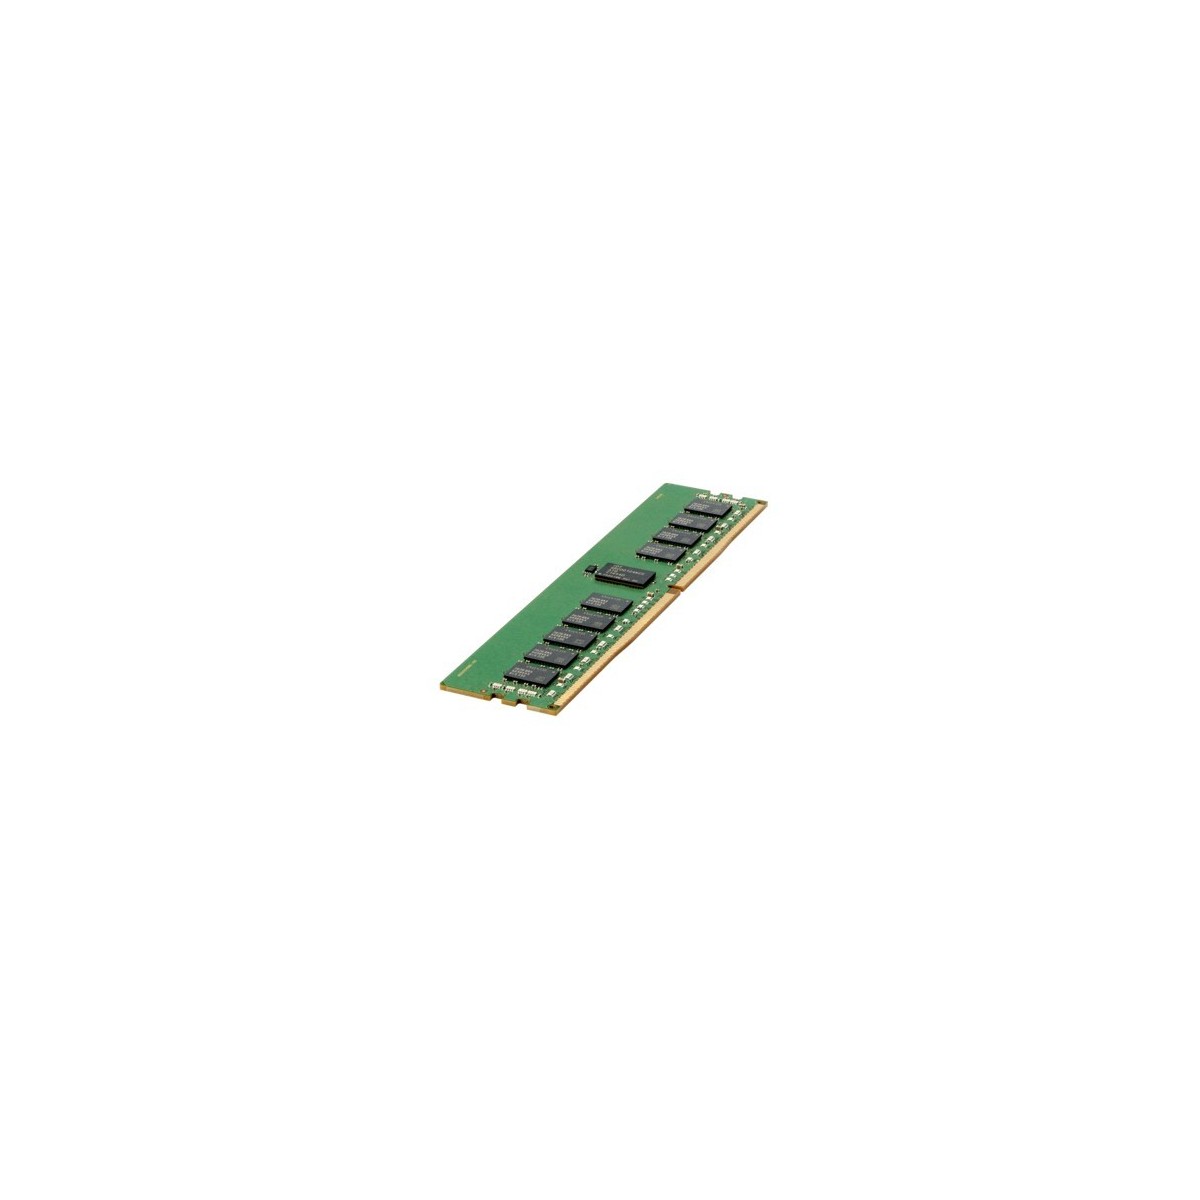 HPE 16GB DDR4-2400 - 16 GB - 1 x 16 GB - DDR4 - 2400 MHz - 288-pin DIMM - Green